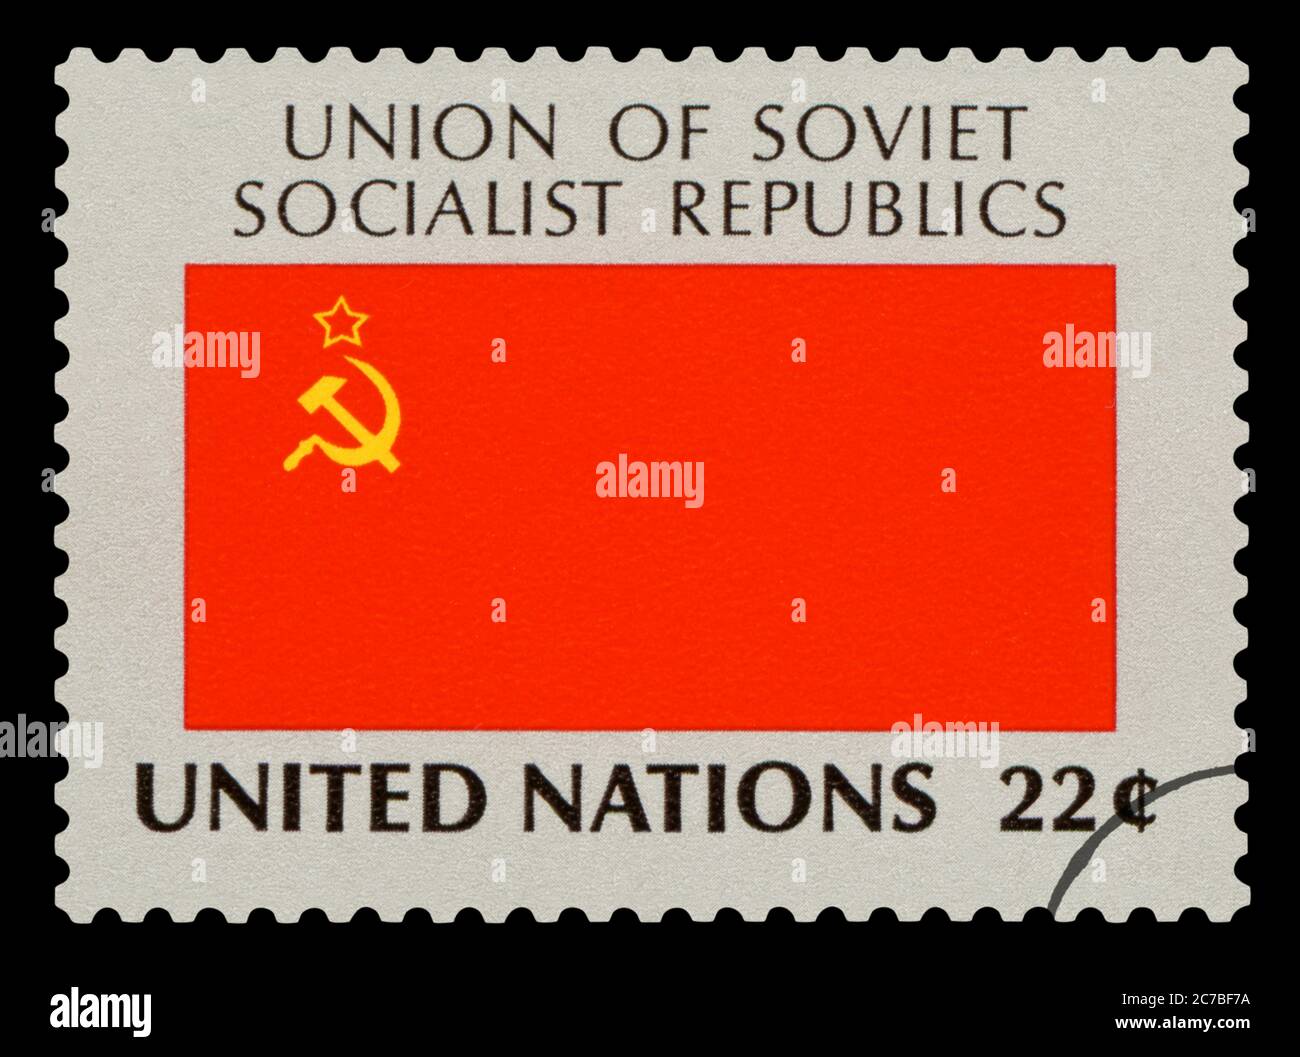 URSS - timbre de poste du drapeau national de l'URSS, série des Nations Unies, vers 1984. Isolé sur fond noir. Banque D'Images